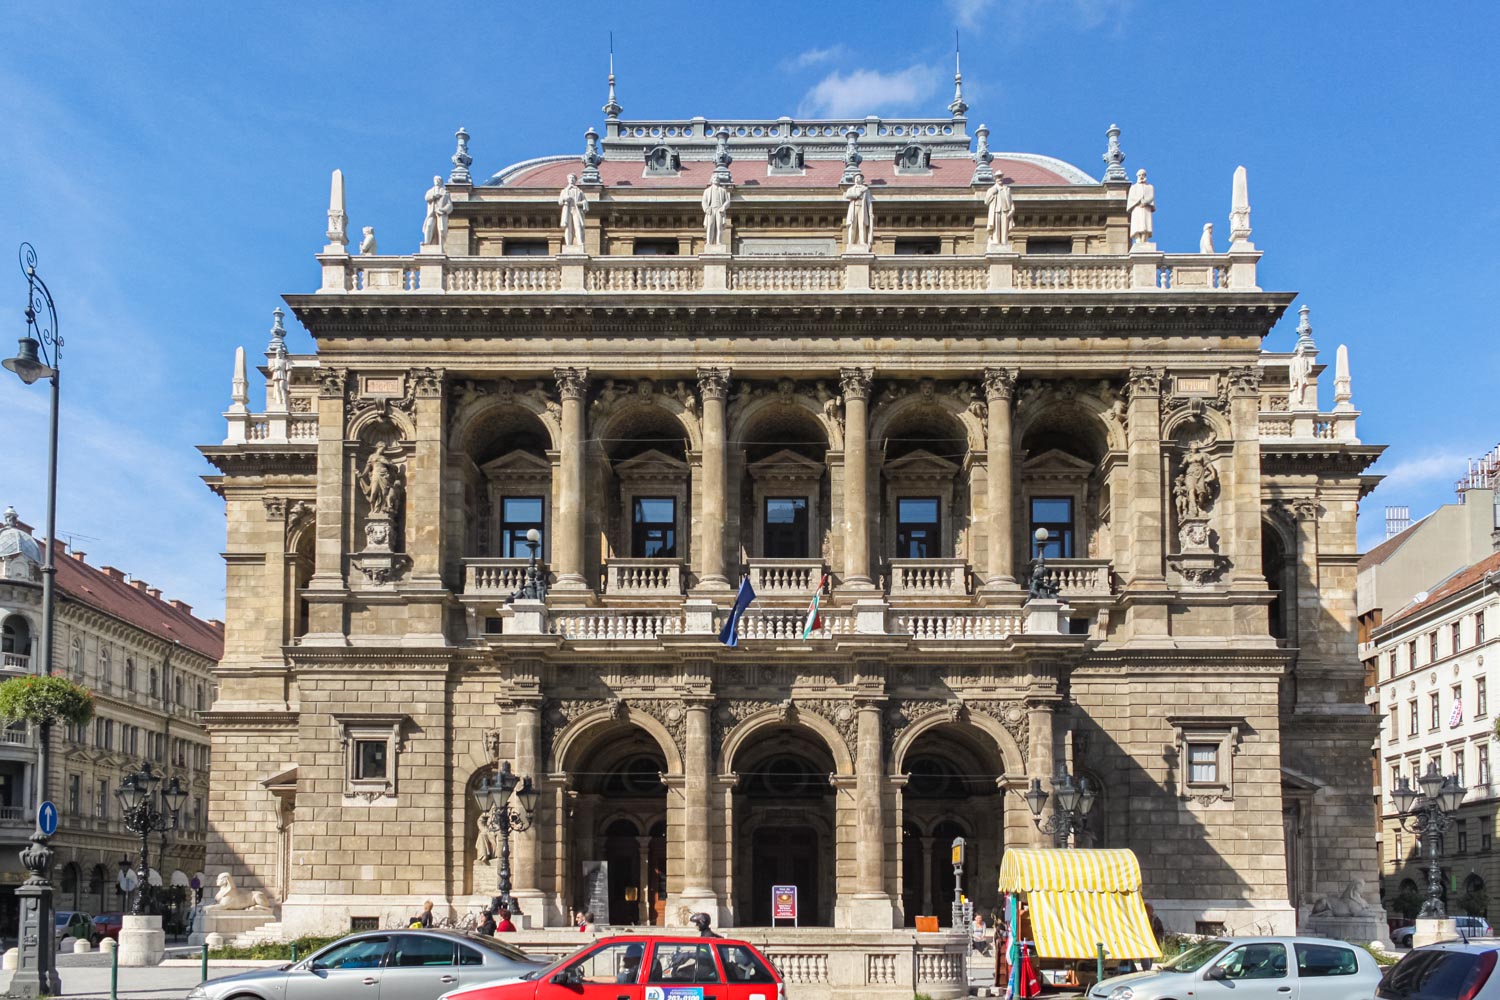 世界を目指すバレリーナとダンサーが集うハンガリー国立歌劇場